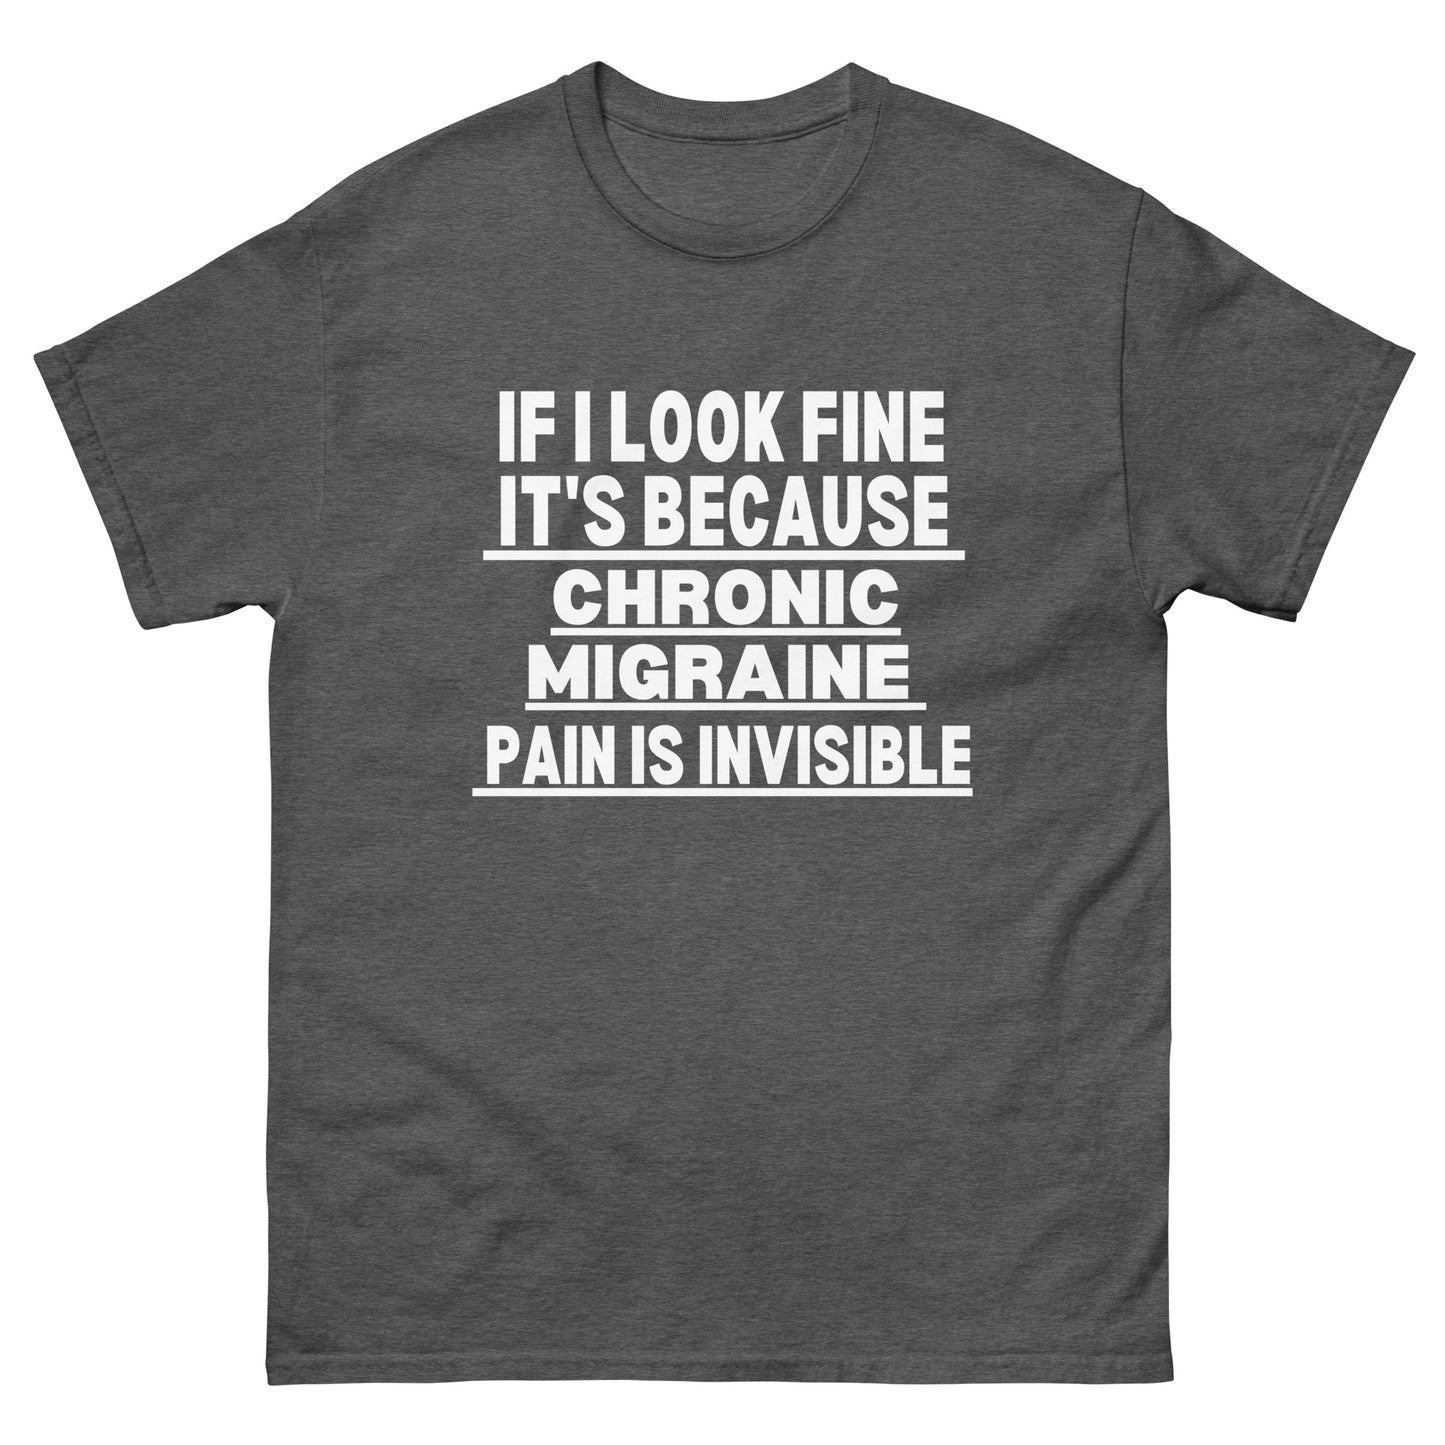 Chronic Migraine Warrior, Chronic Migraine Awareness, Chronic Migraine Pain, Chronic Migraine Support, Chronic Migraine Gift